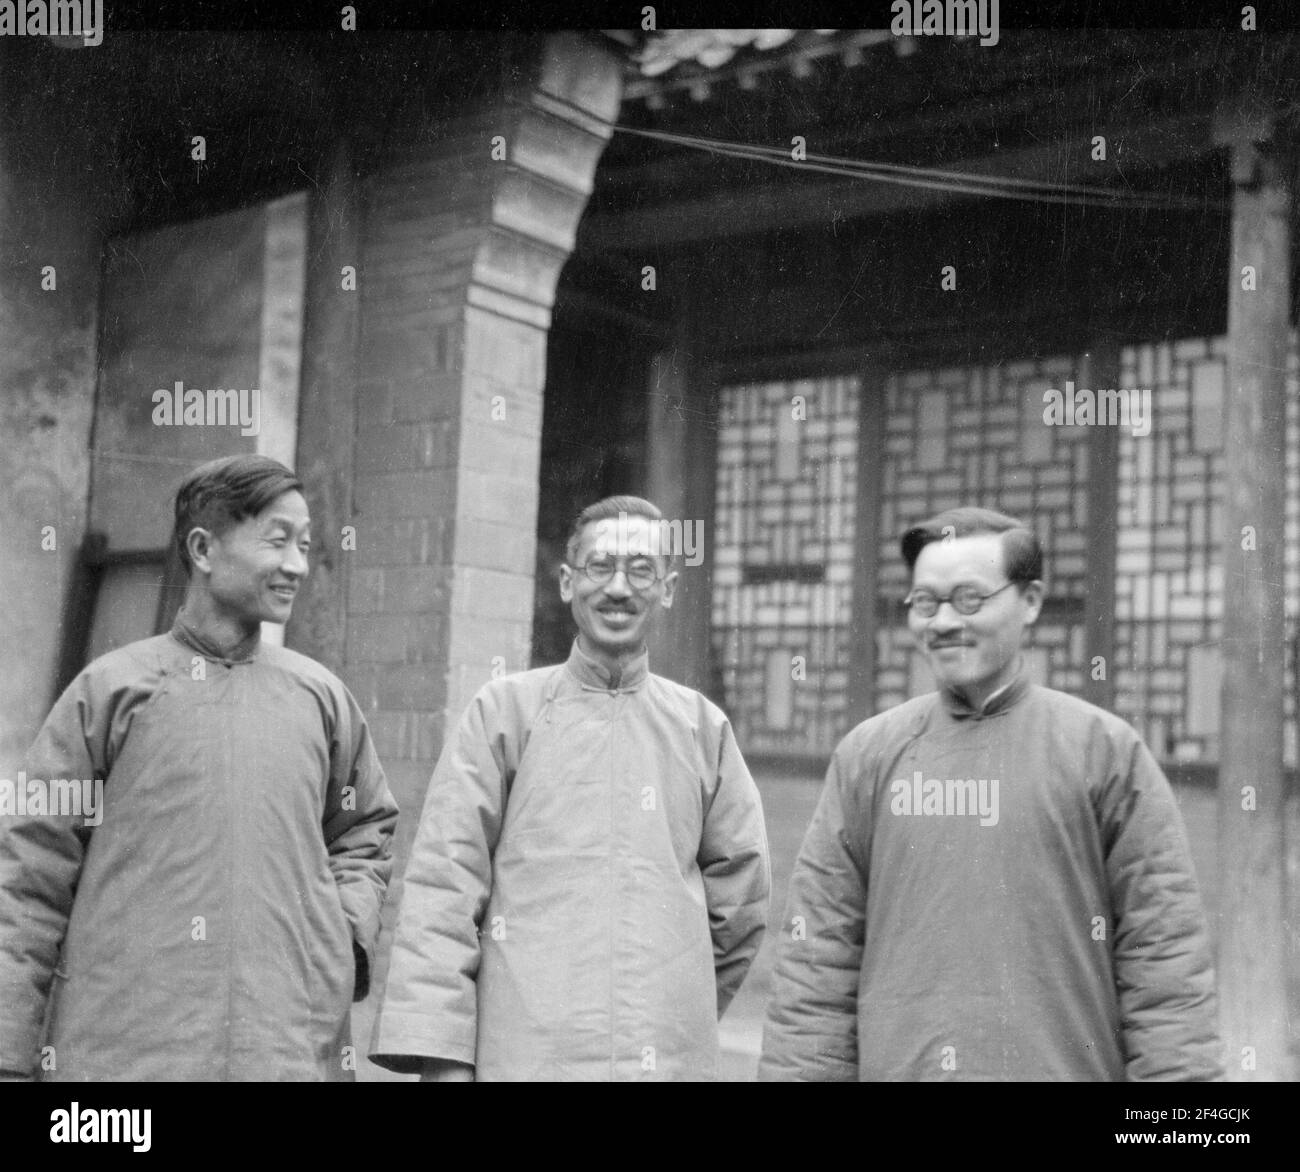 Jimmy Yen und Kollegen, China, Ding Xian (China), Dingzhou Shi (China), Hebei Sheng (China), 1931. Aus der Sammlung Sidney D. Gamble Photographs. () Stockfoto